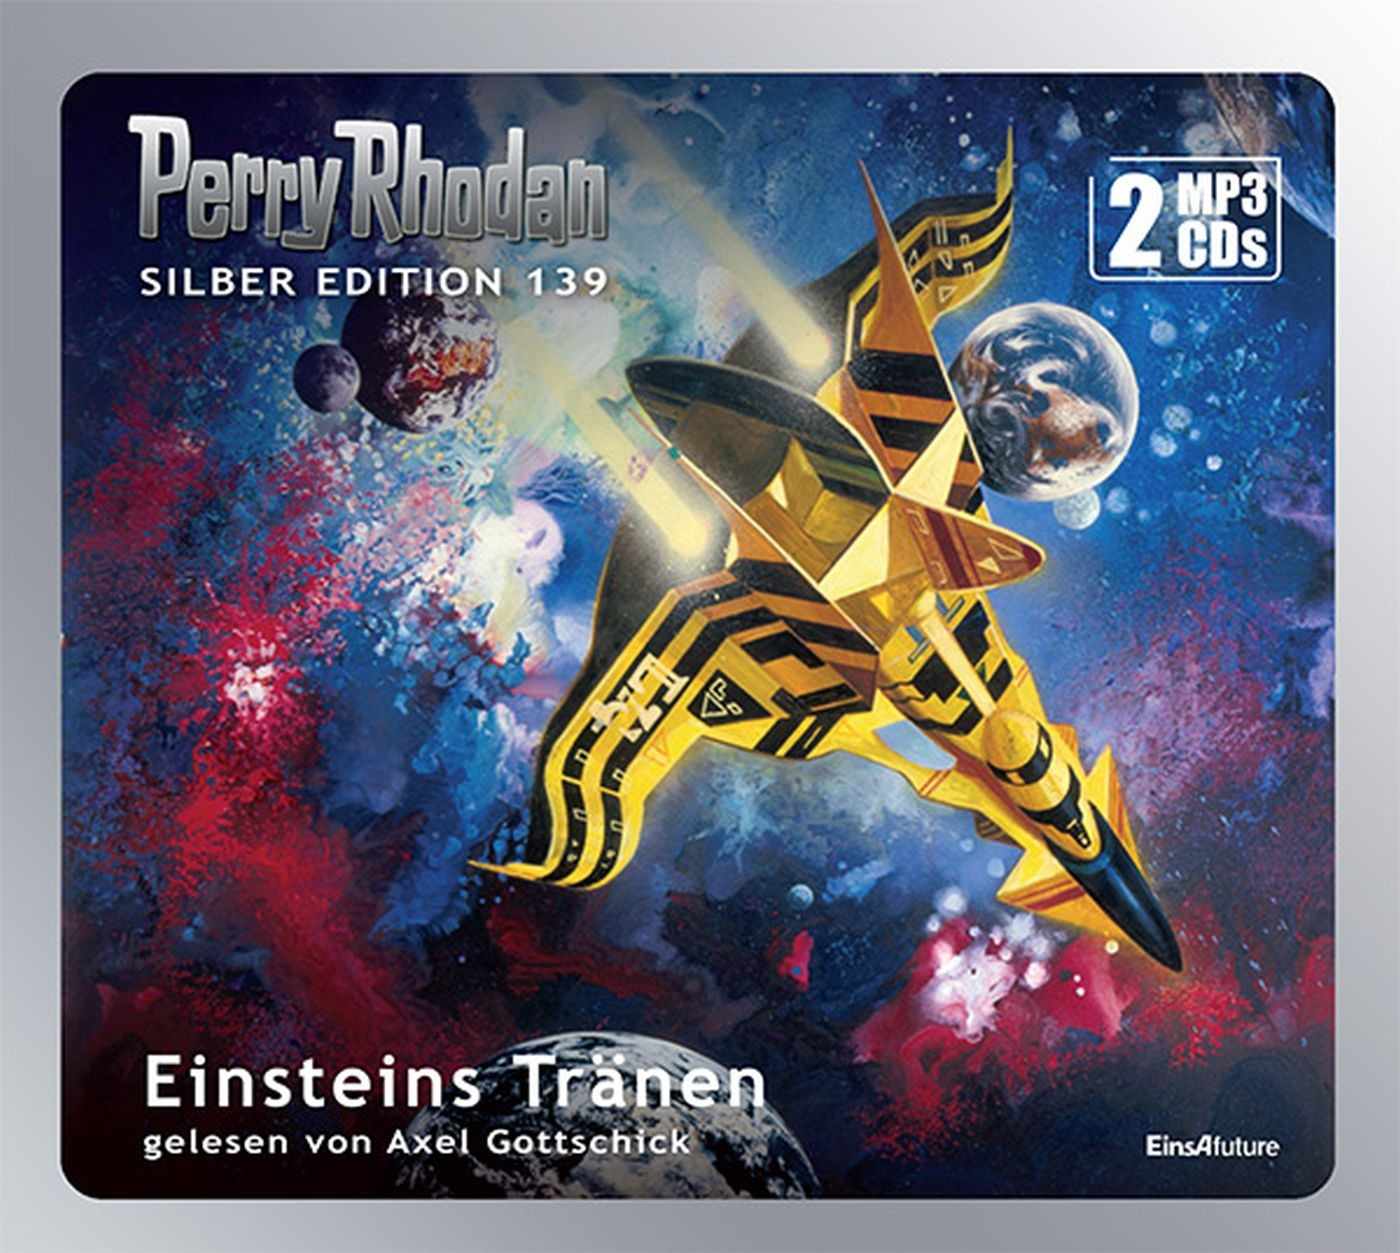 Perry Rhodan Silber Edition 139 Einsteins Tränen (2 mp3-CDs)